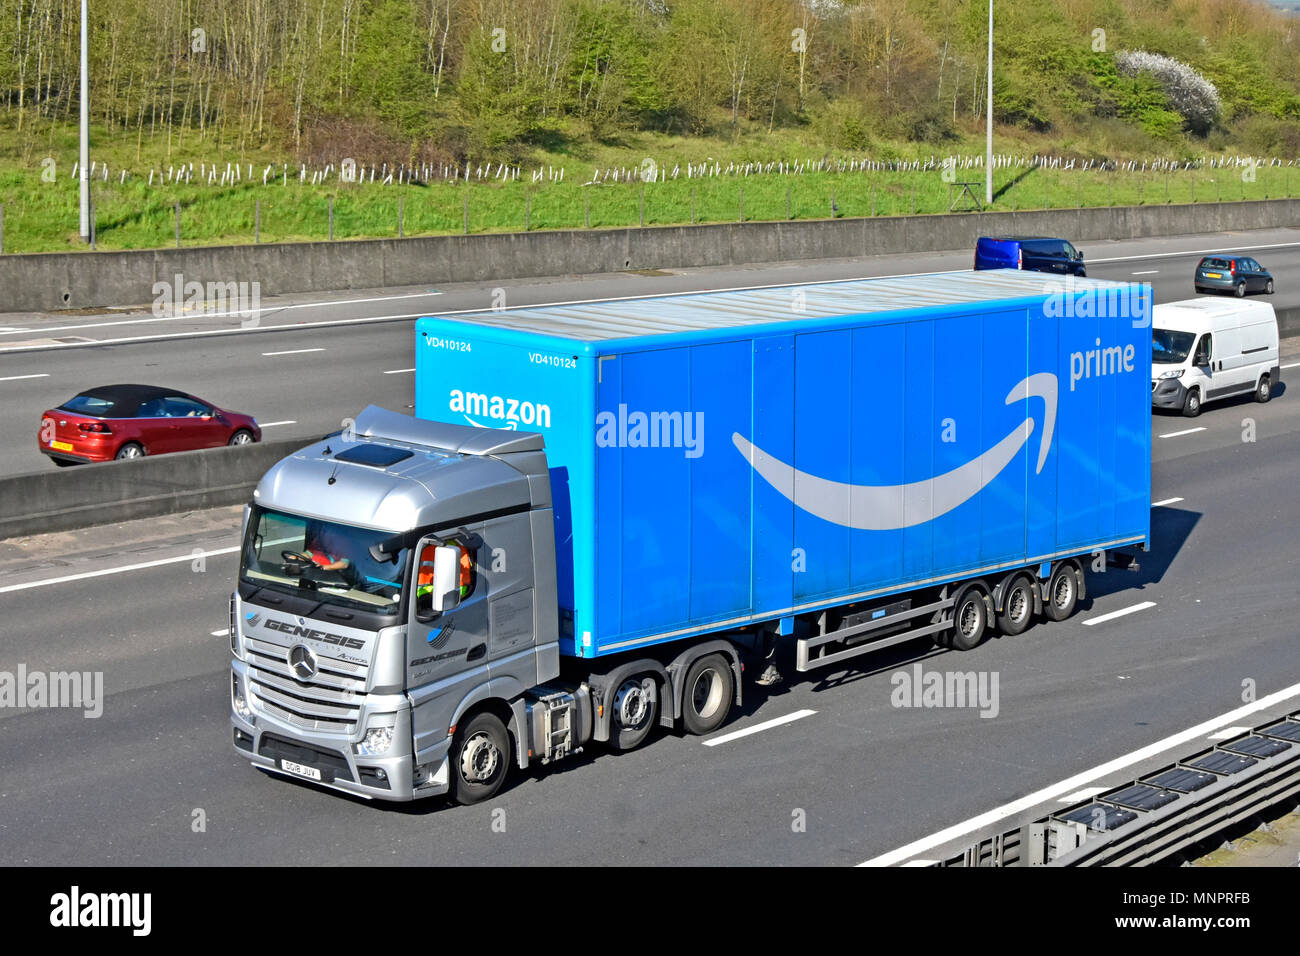 Fronte e Lato della Mercedes hgv della logistica del trasporto su camion Truck & blue rimorchio articolato la pubblicità del marchio Amazon Prime Service & logo su autostrada DEL REGNO UNITO Foto Stock